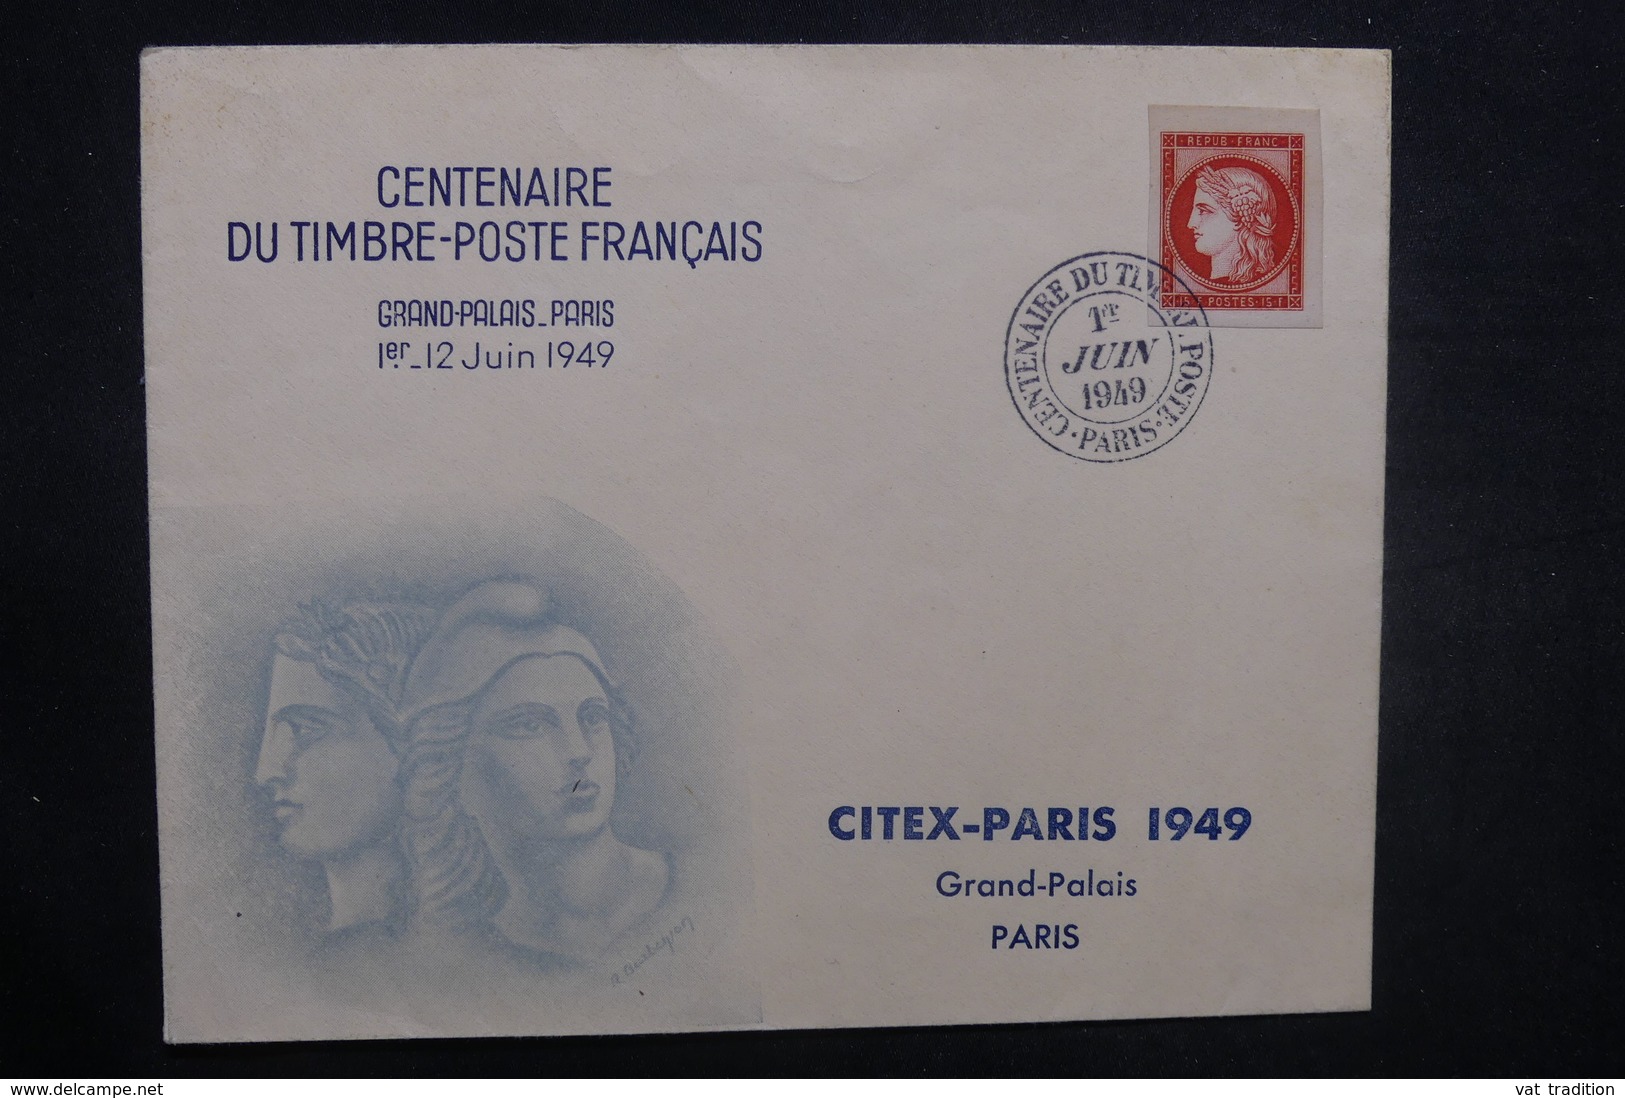 FRANCE - Enveloppe FDC 1949 , Centenaire du timbre poste Français - L 37654